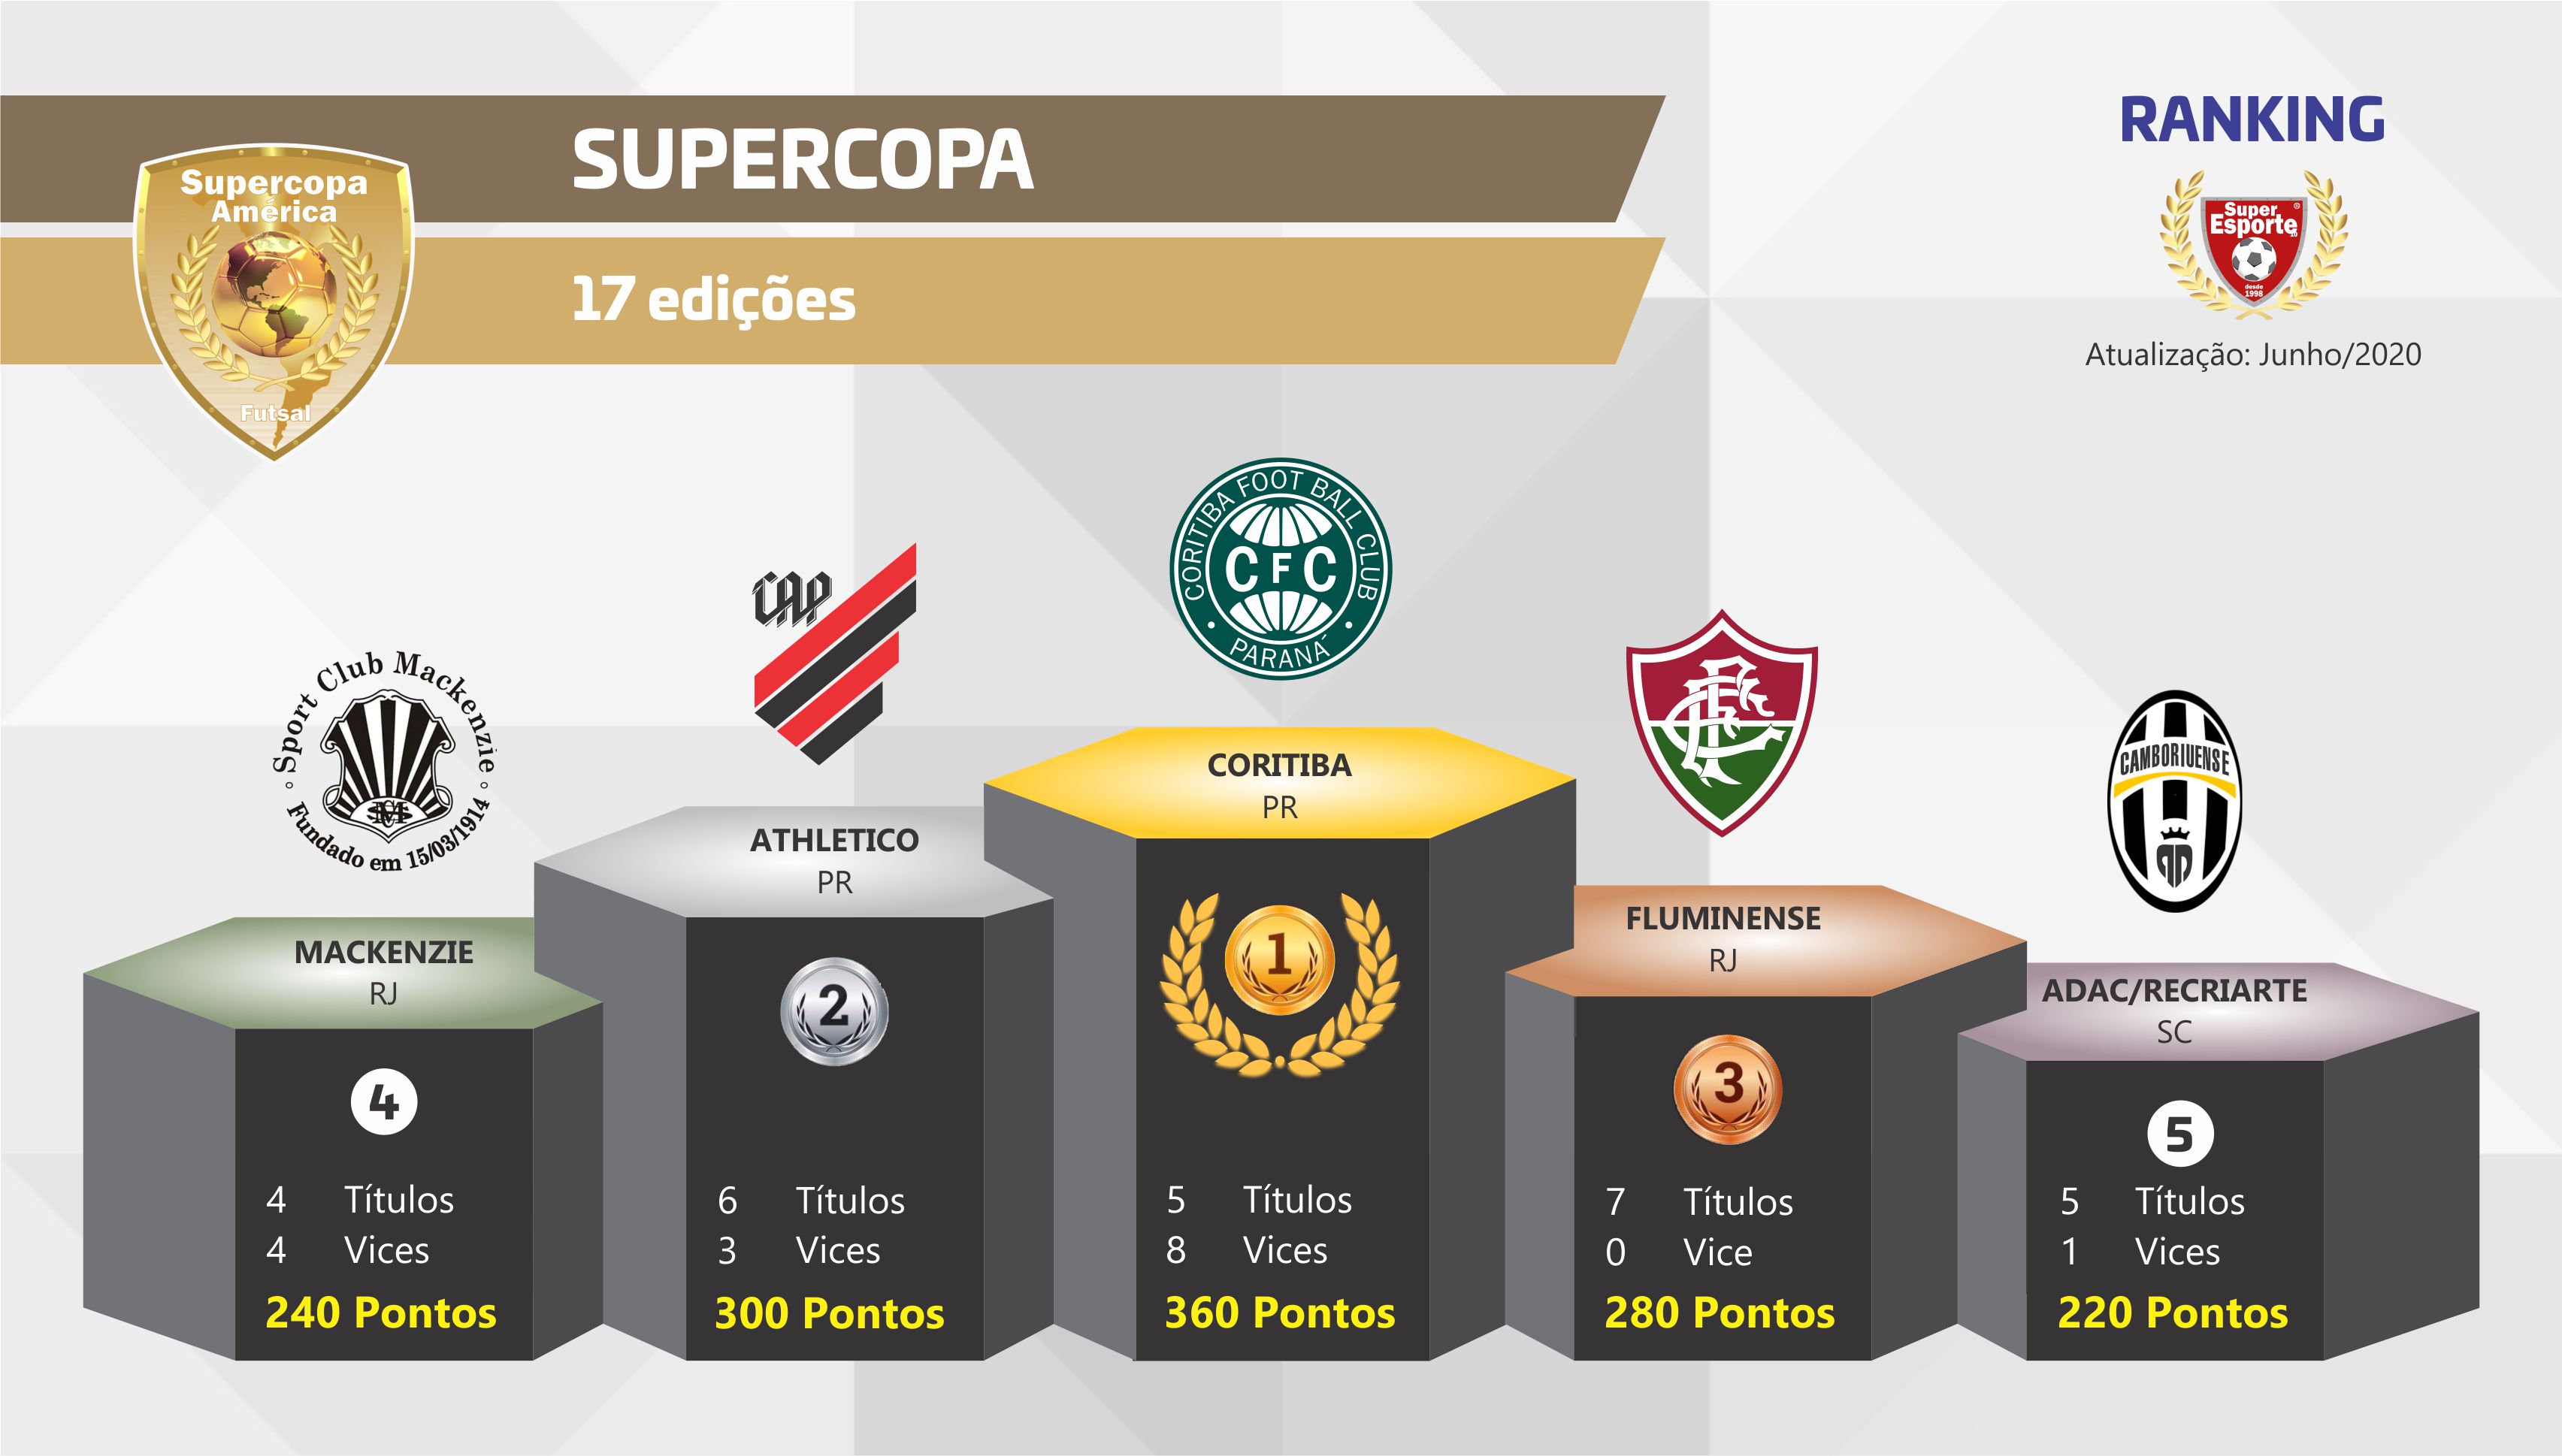 Supercopa divulga seu Ranking